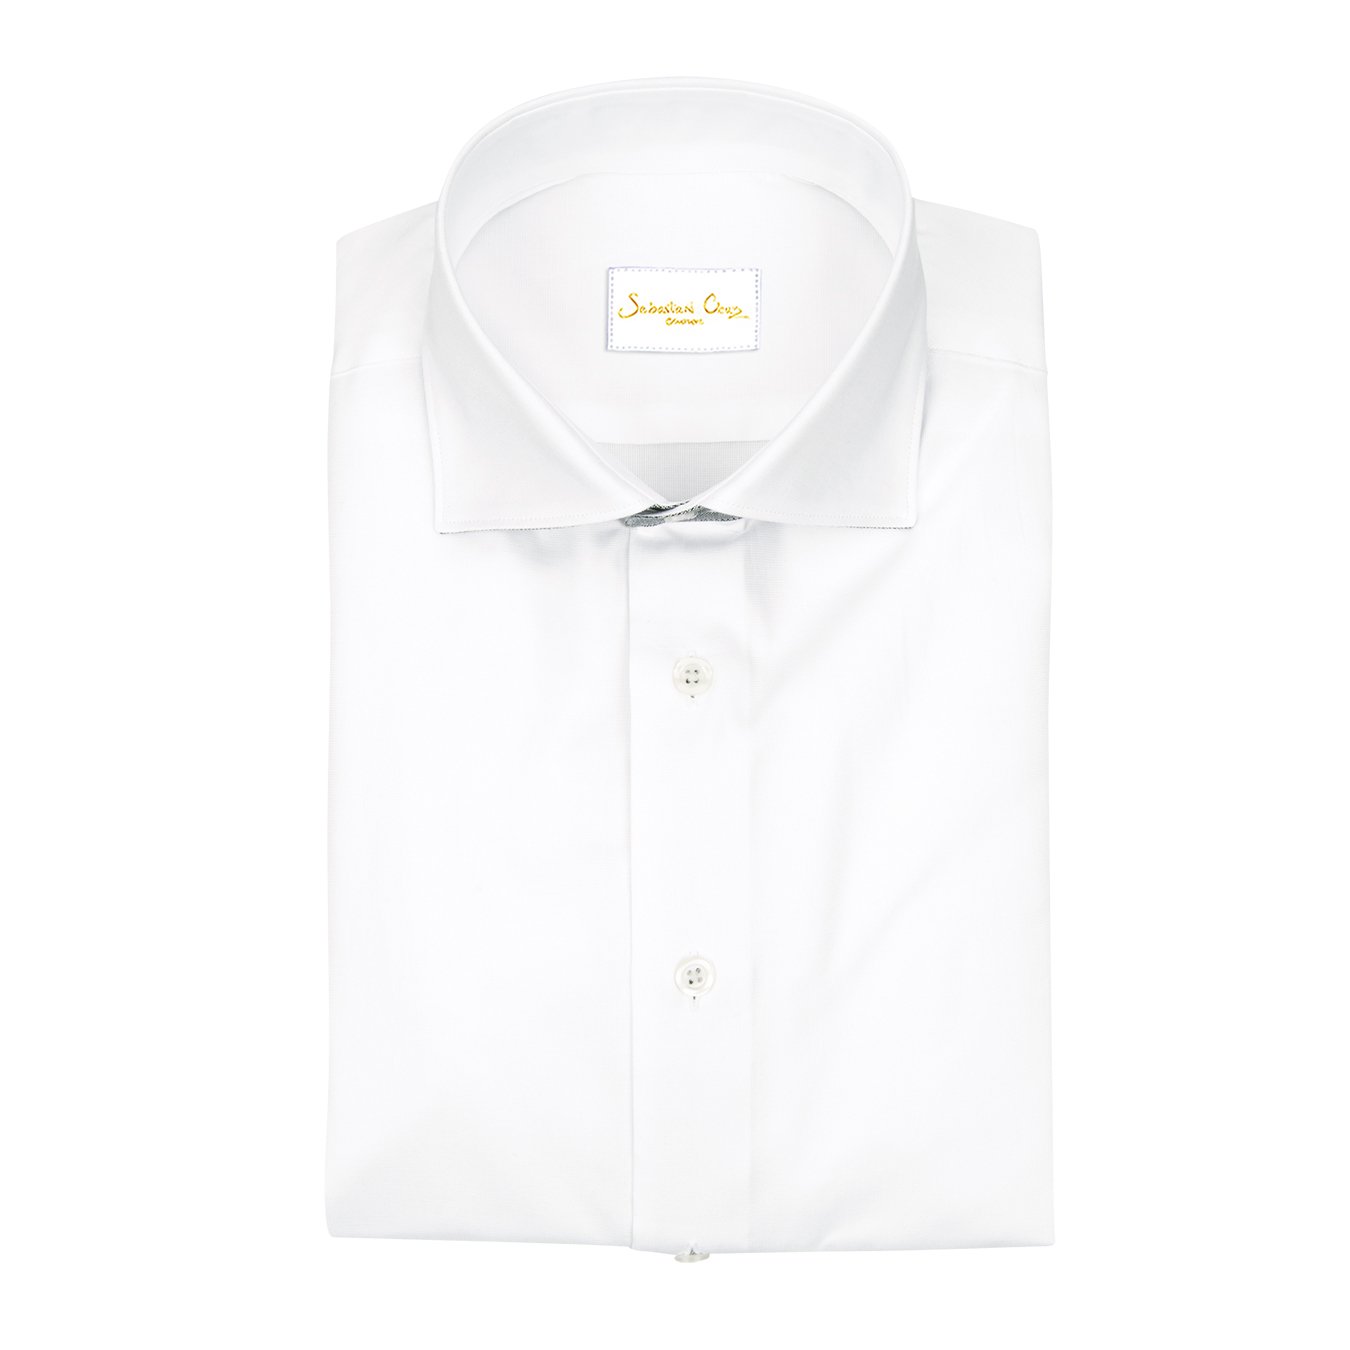 White Tungsten Short Sleeve Shirt